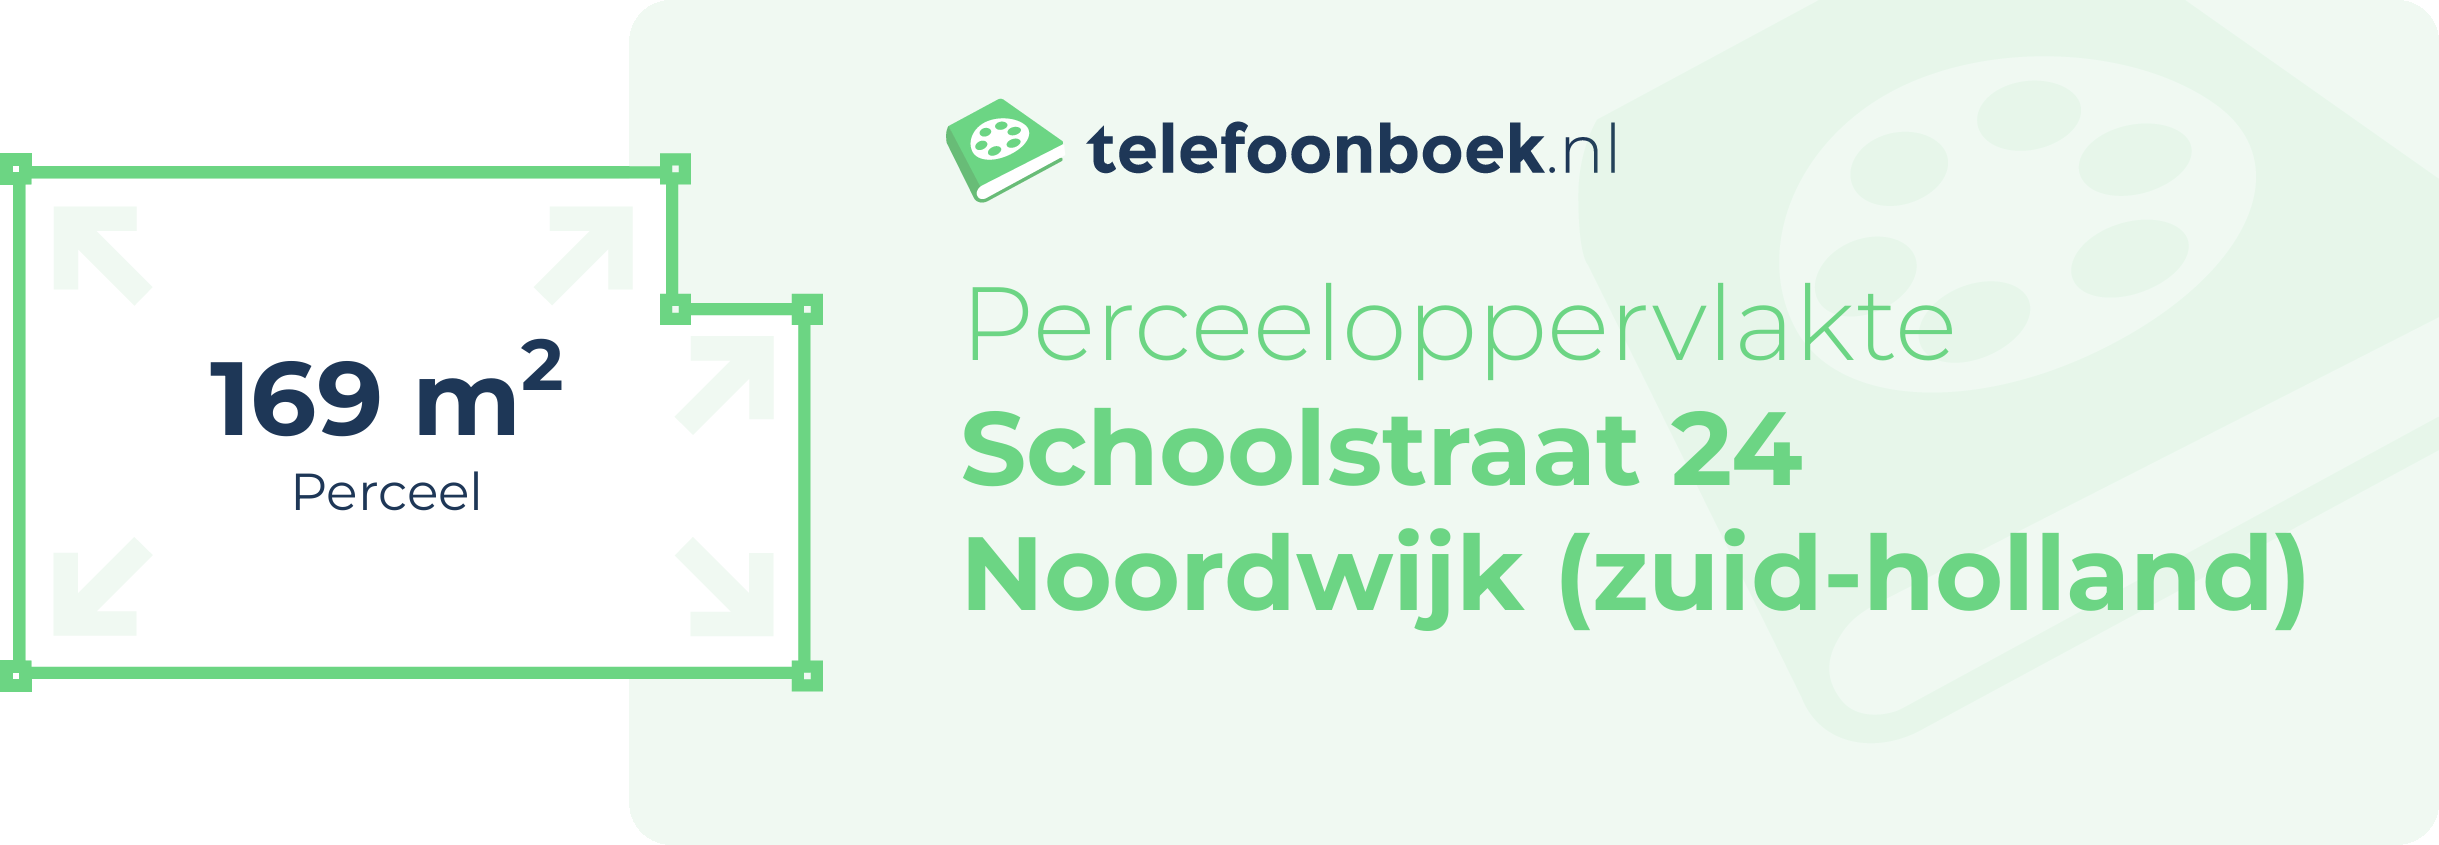 Perceeloppervlakte Schoolstraat 24 Noordwijk (Zuid-Holland)